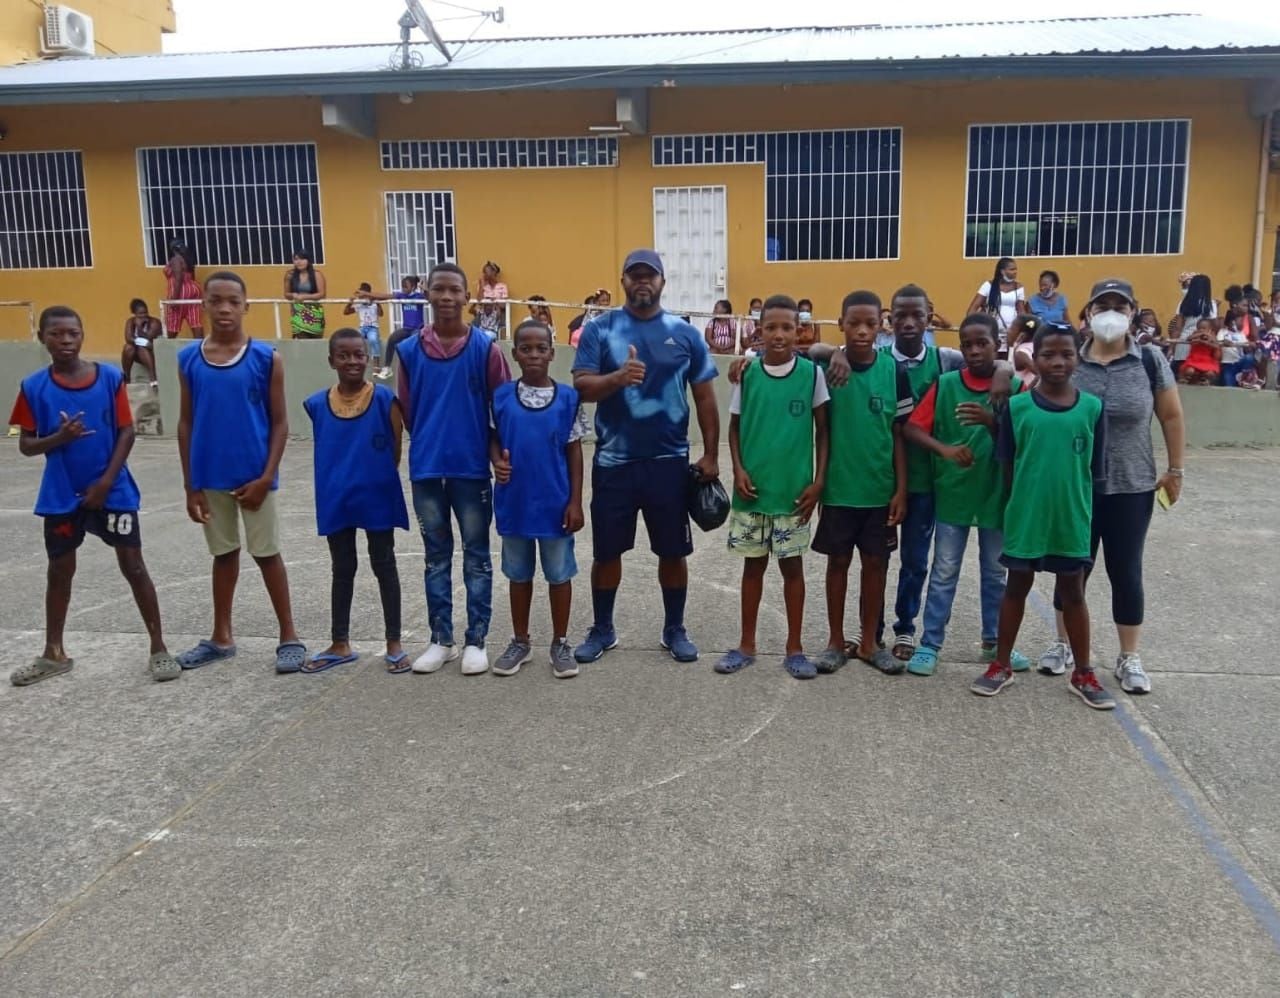 Fasema, fundación de Tenis de campo en el Chocó. Fundada por Fabio Serna Machado ha ayudado a más de 3 mil niños en una zona vulnerada del país.